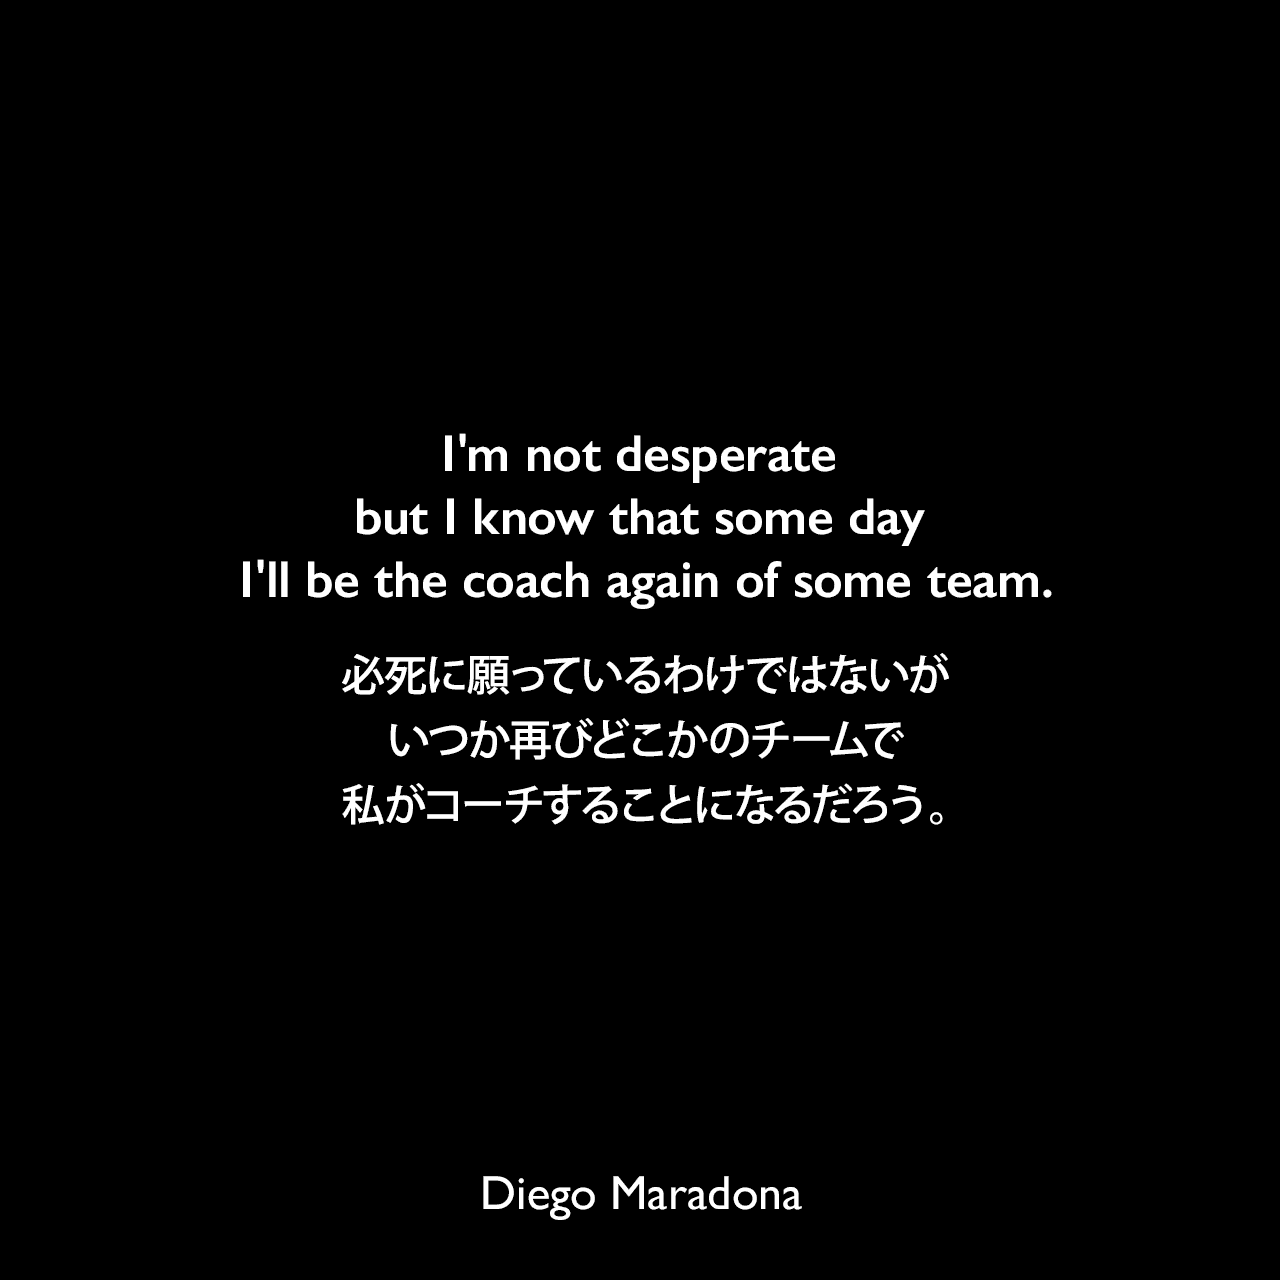 I'm not desperate but I know that some day I'll be the coach again of some team.必死に願っているわけではないが、いつか再びどこかのチームで私がコーチすることになるだろう。Diego Maradona